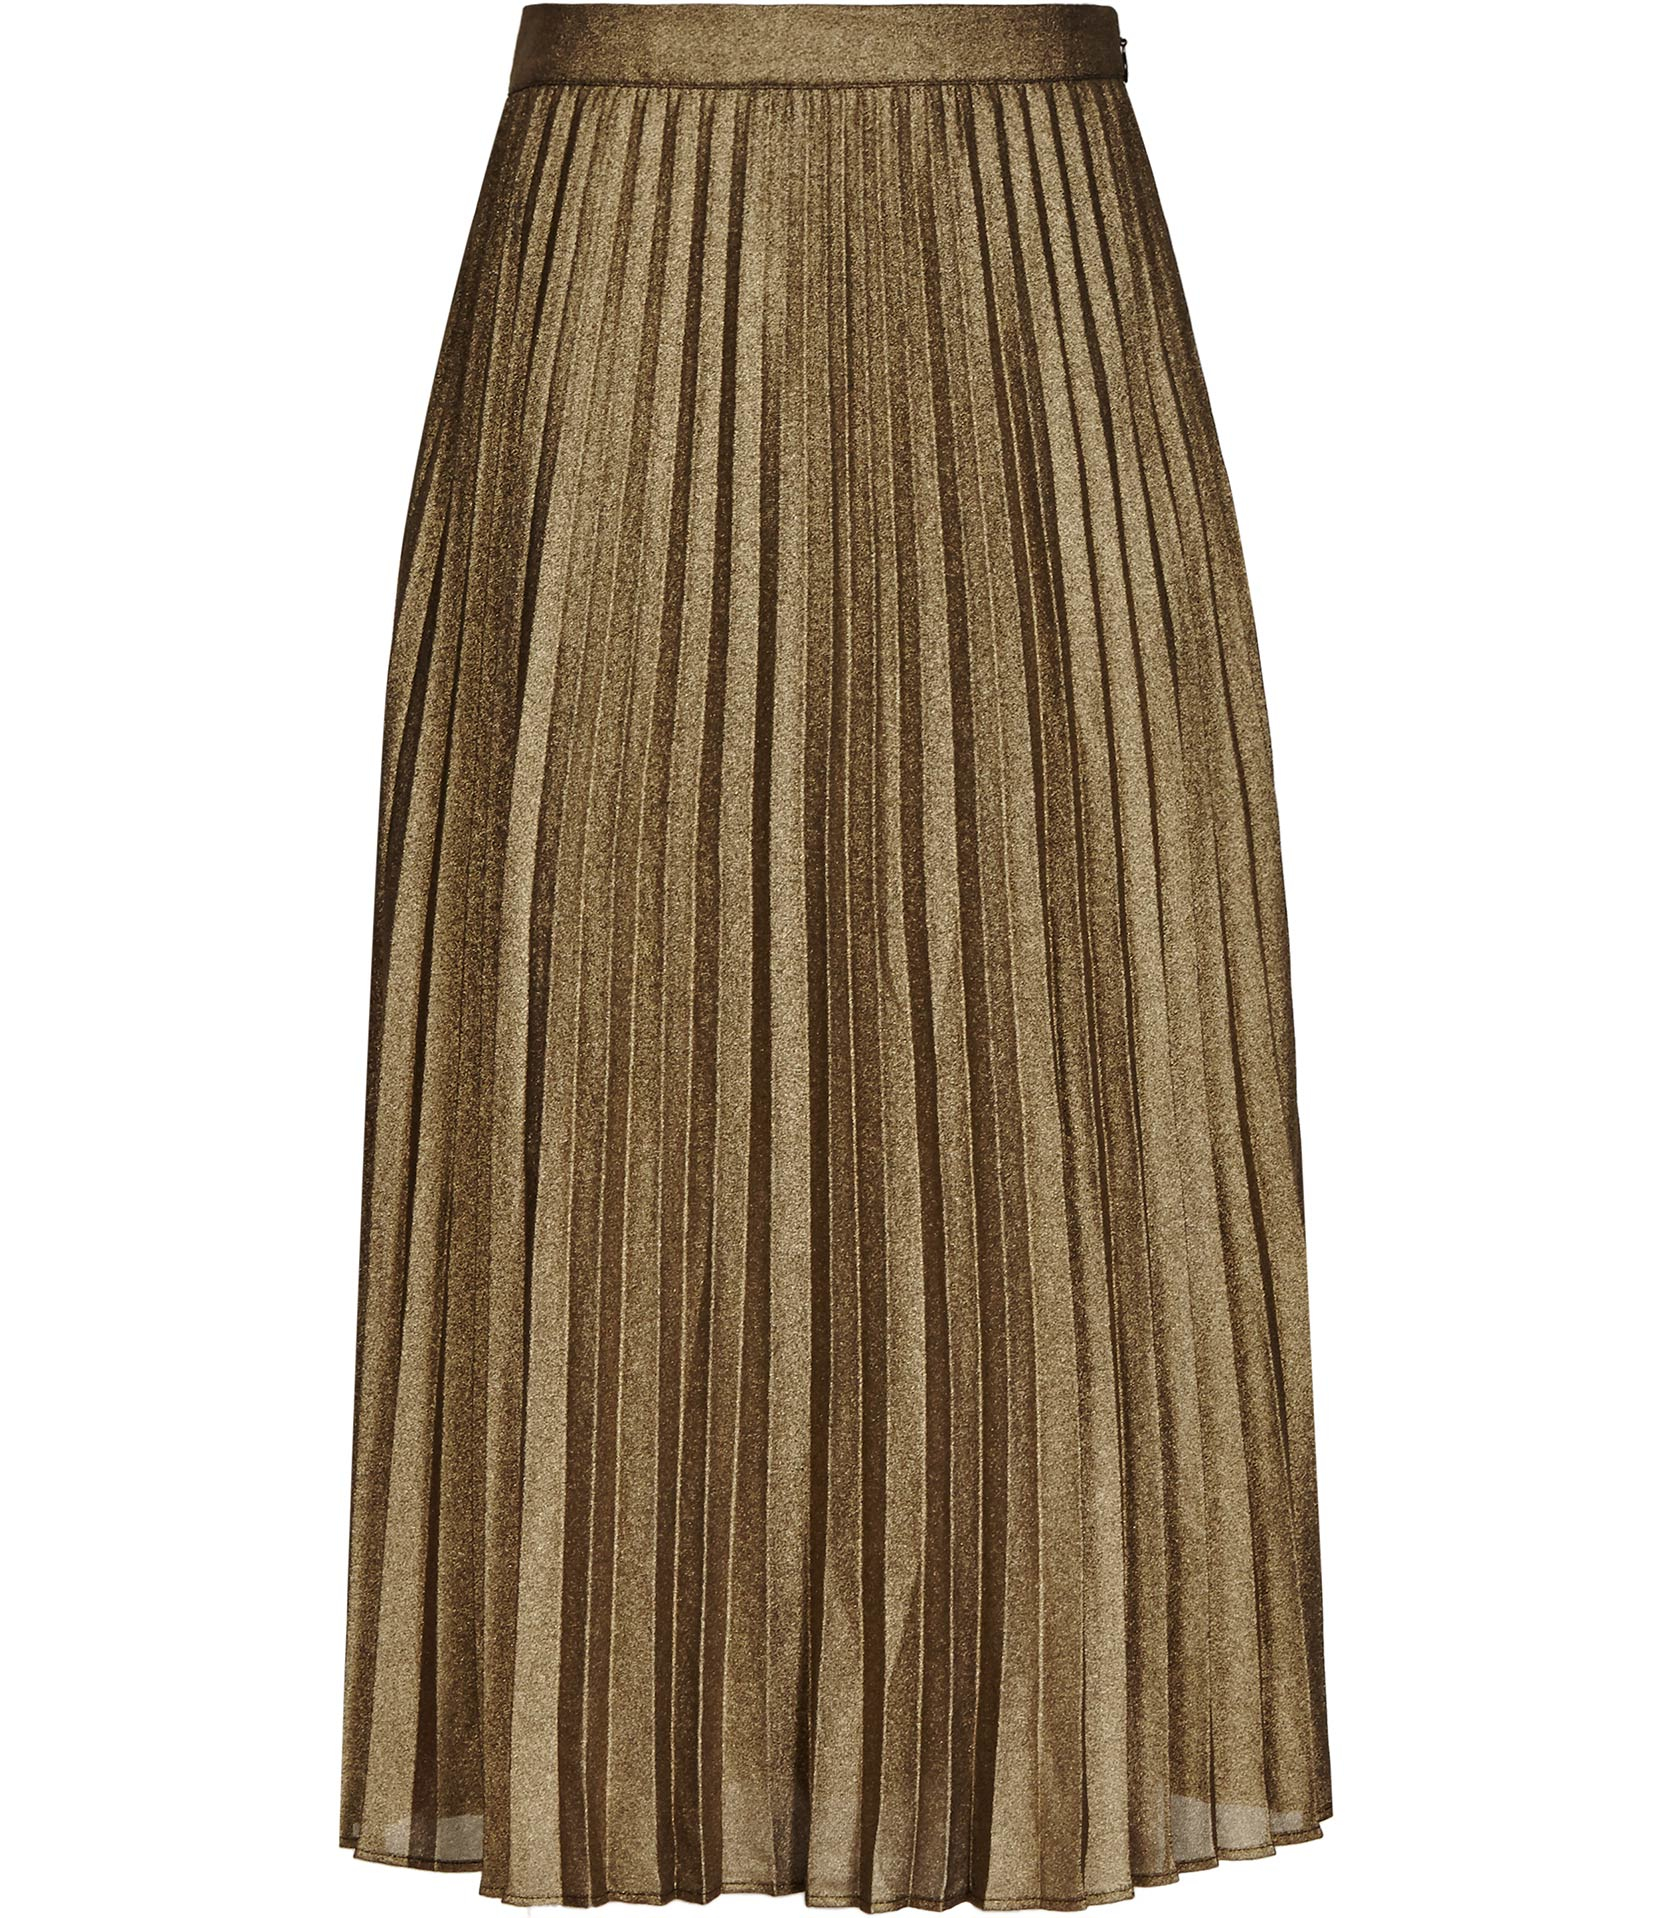 Lyst - Reiss Kaeya Metallic Pleated Midi Skirt in Metallic